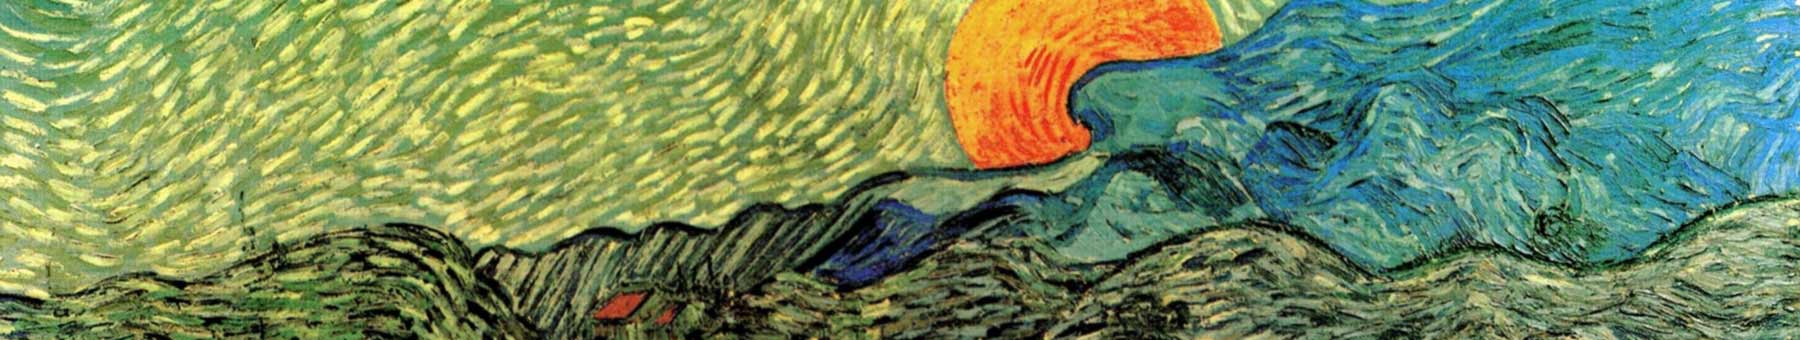 Evening Landscape painting by Vincent van Gogh